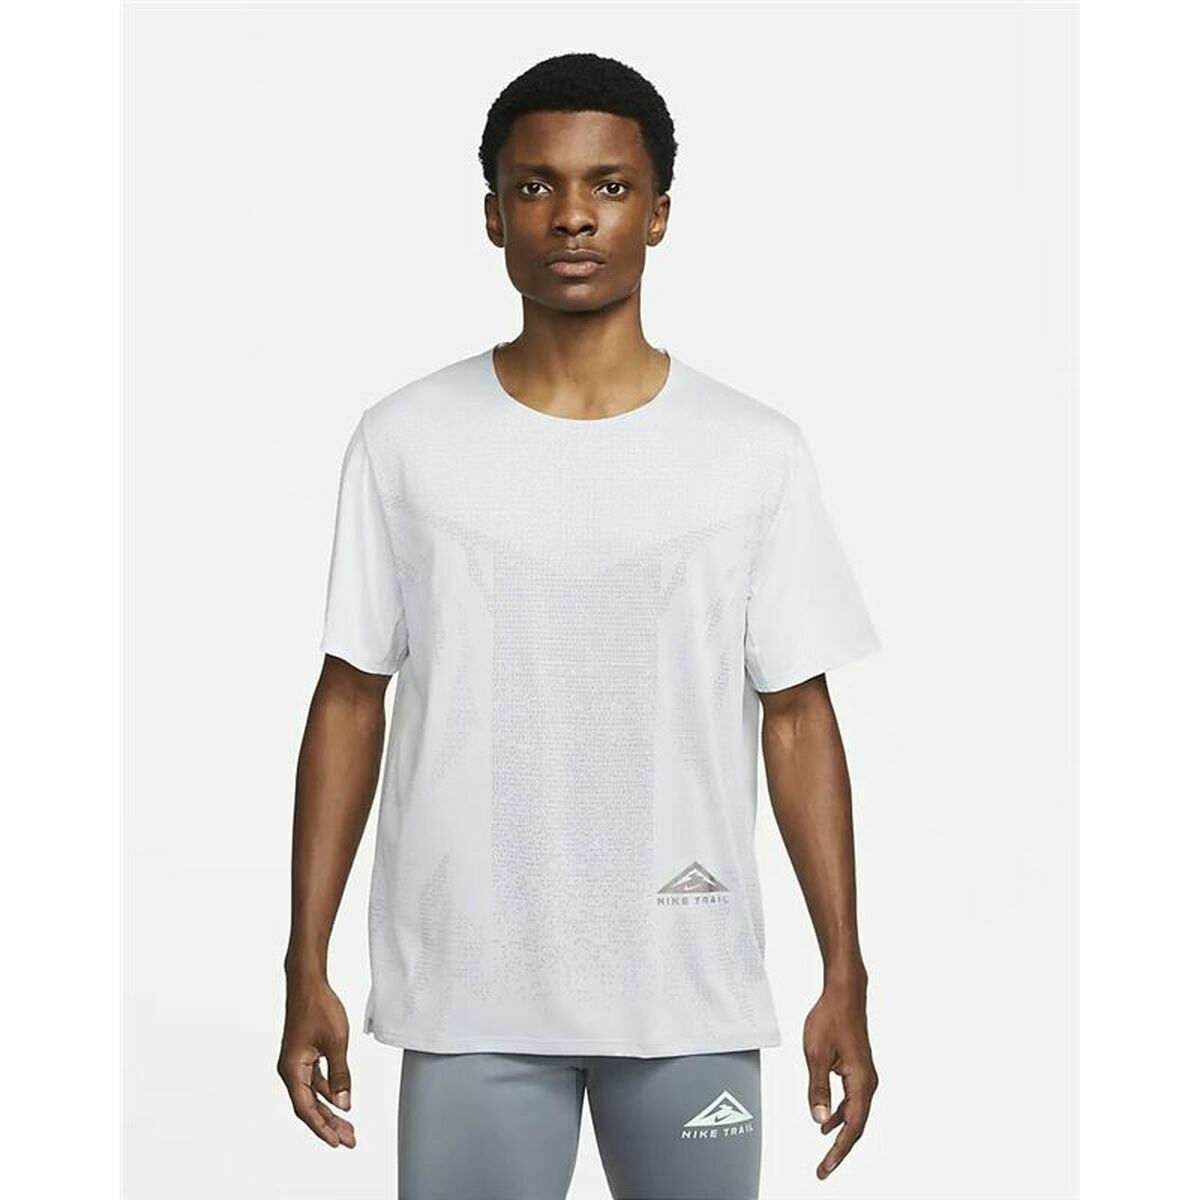 Osta tuote Miesten T-paita Nike Dri-FIT Rise 365 Valkoinen (Koko: L) verkkokaupastamme Korhone: Urheilu & Vapaa-aika 20% alennuksella koodilla VIIKONLOPPU